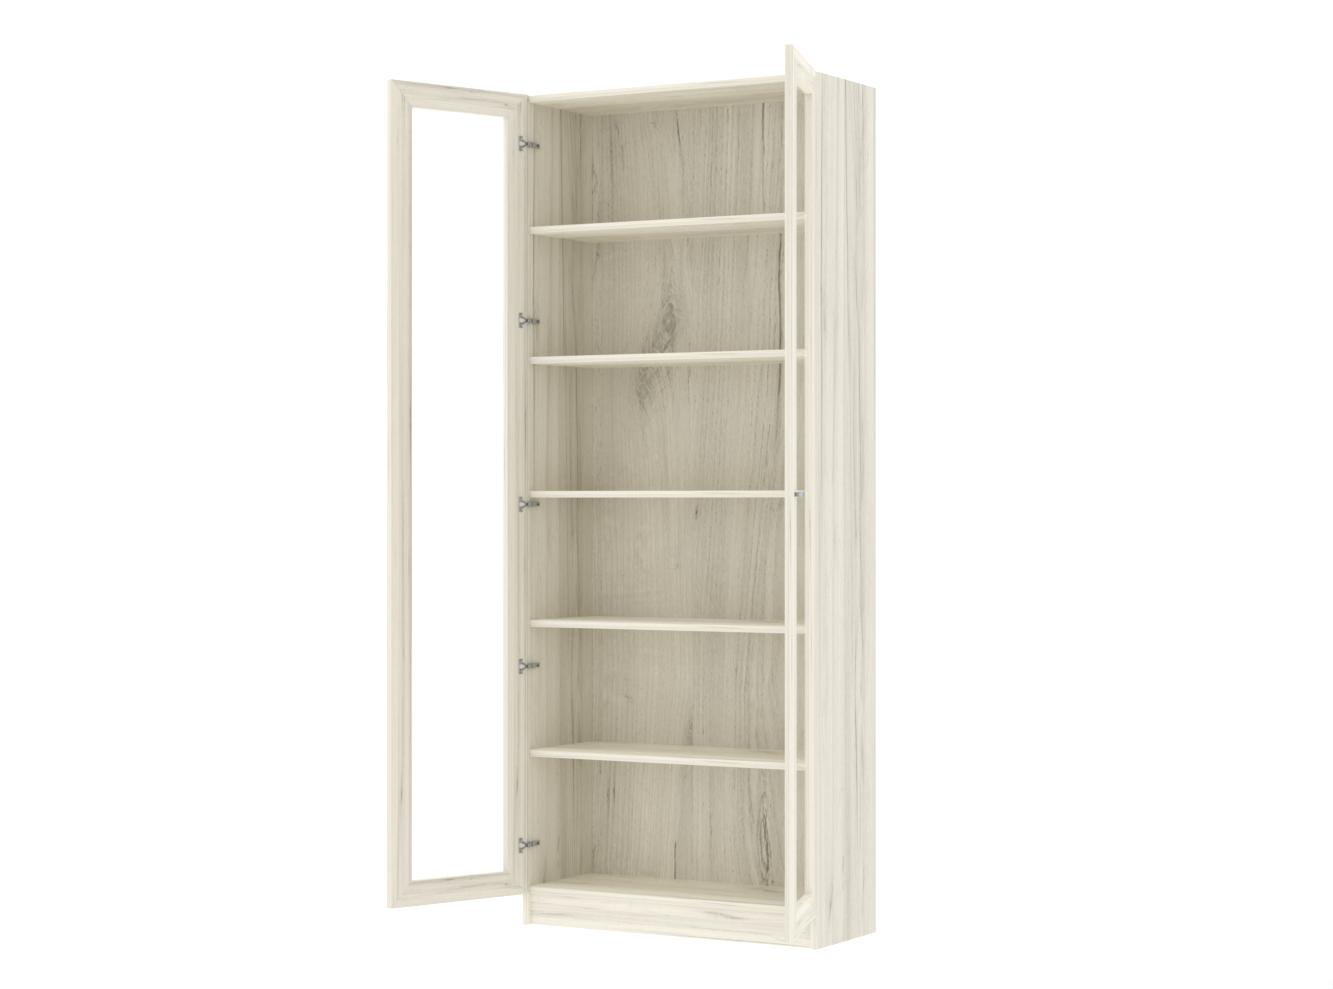 Книжный шкаф Билли 336 oak white craft ИКЕА (IKEA) изображение товара